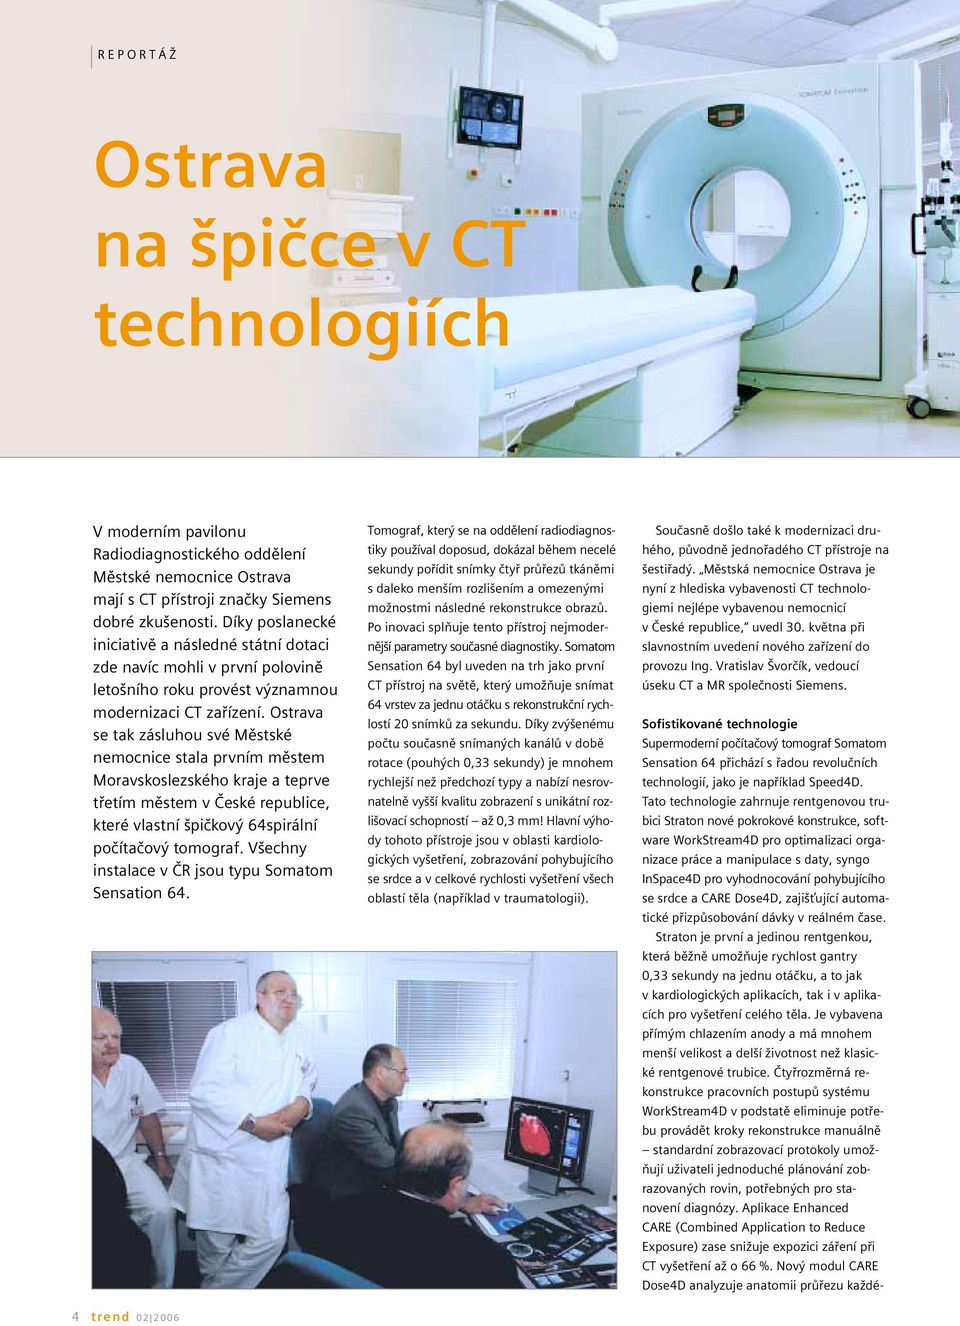 Ostrava se tak zásluhou své Městské nemocnice stala prvním městem Moravskoslezského kraje a teprve třetím městem v České republice, které vlastní špičkový 64spirální počítačový tomograf.